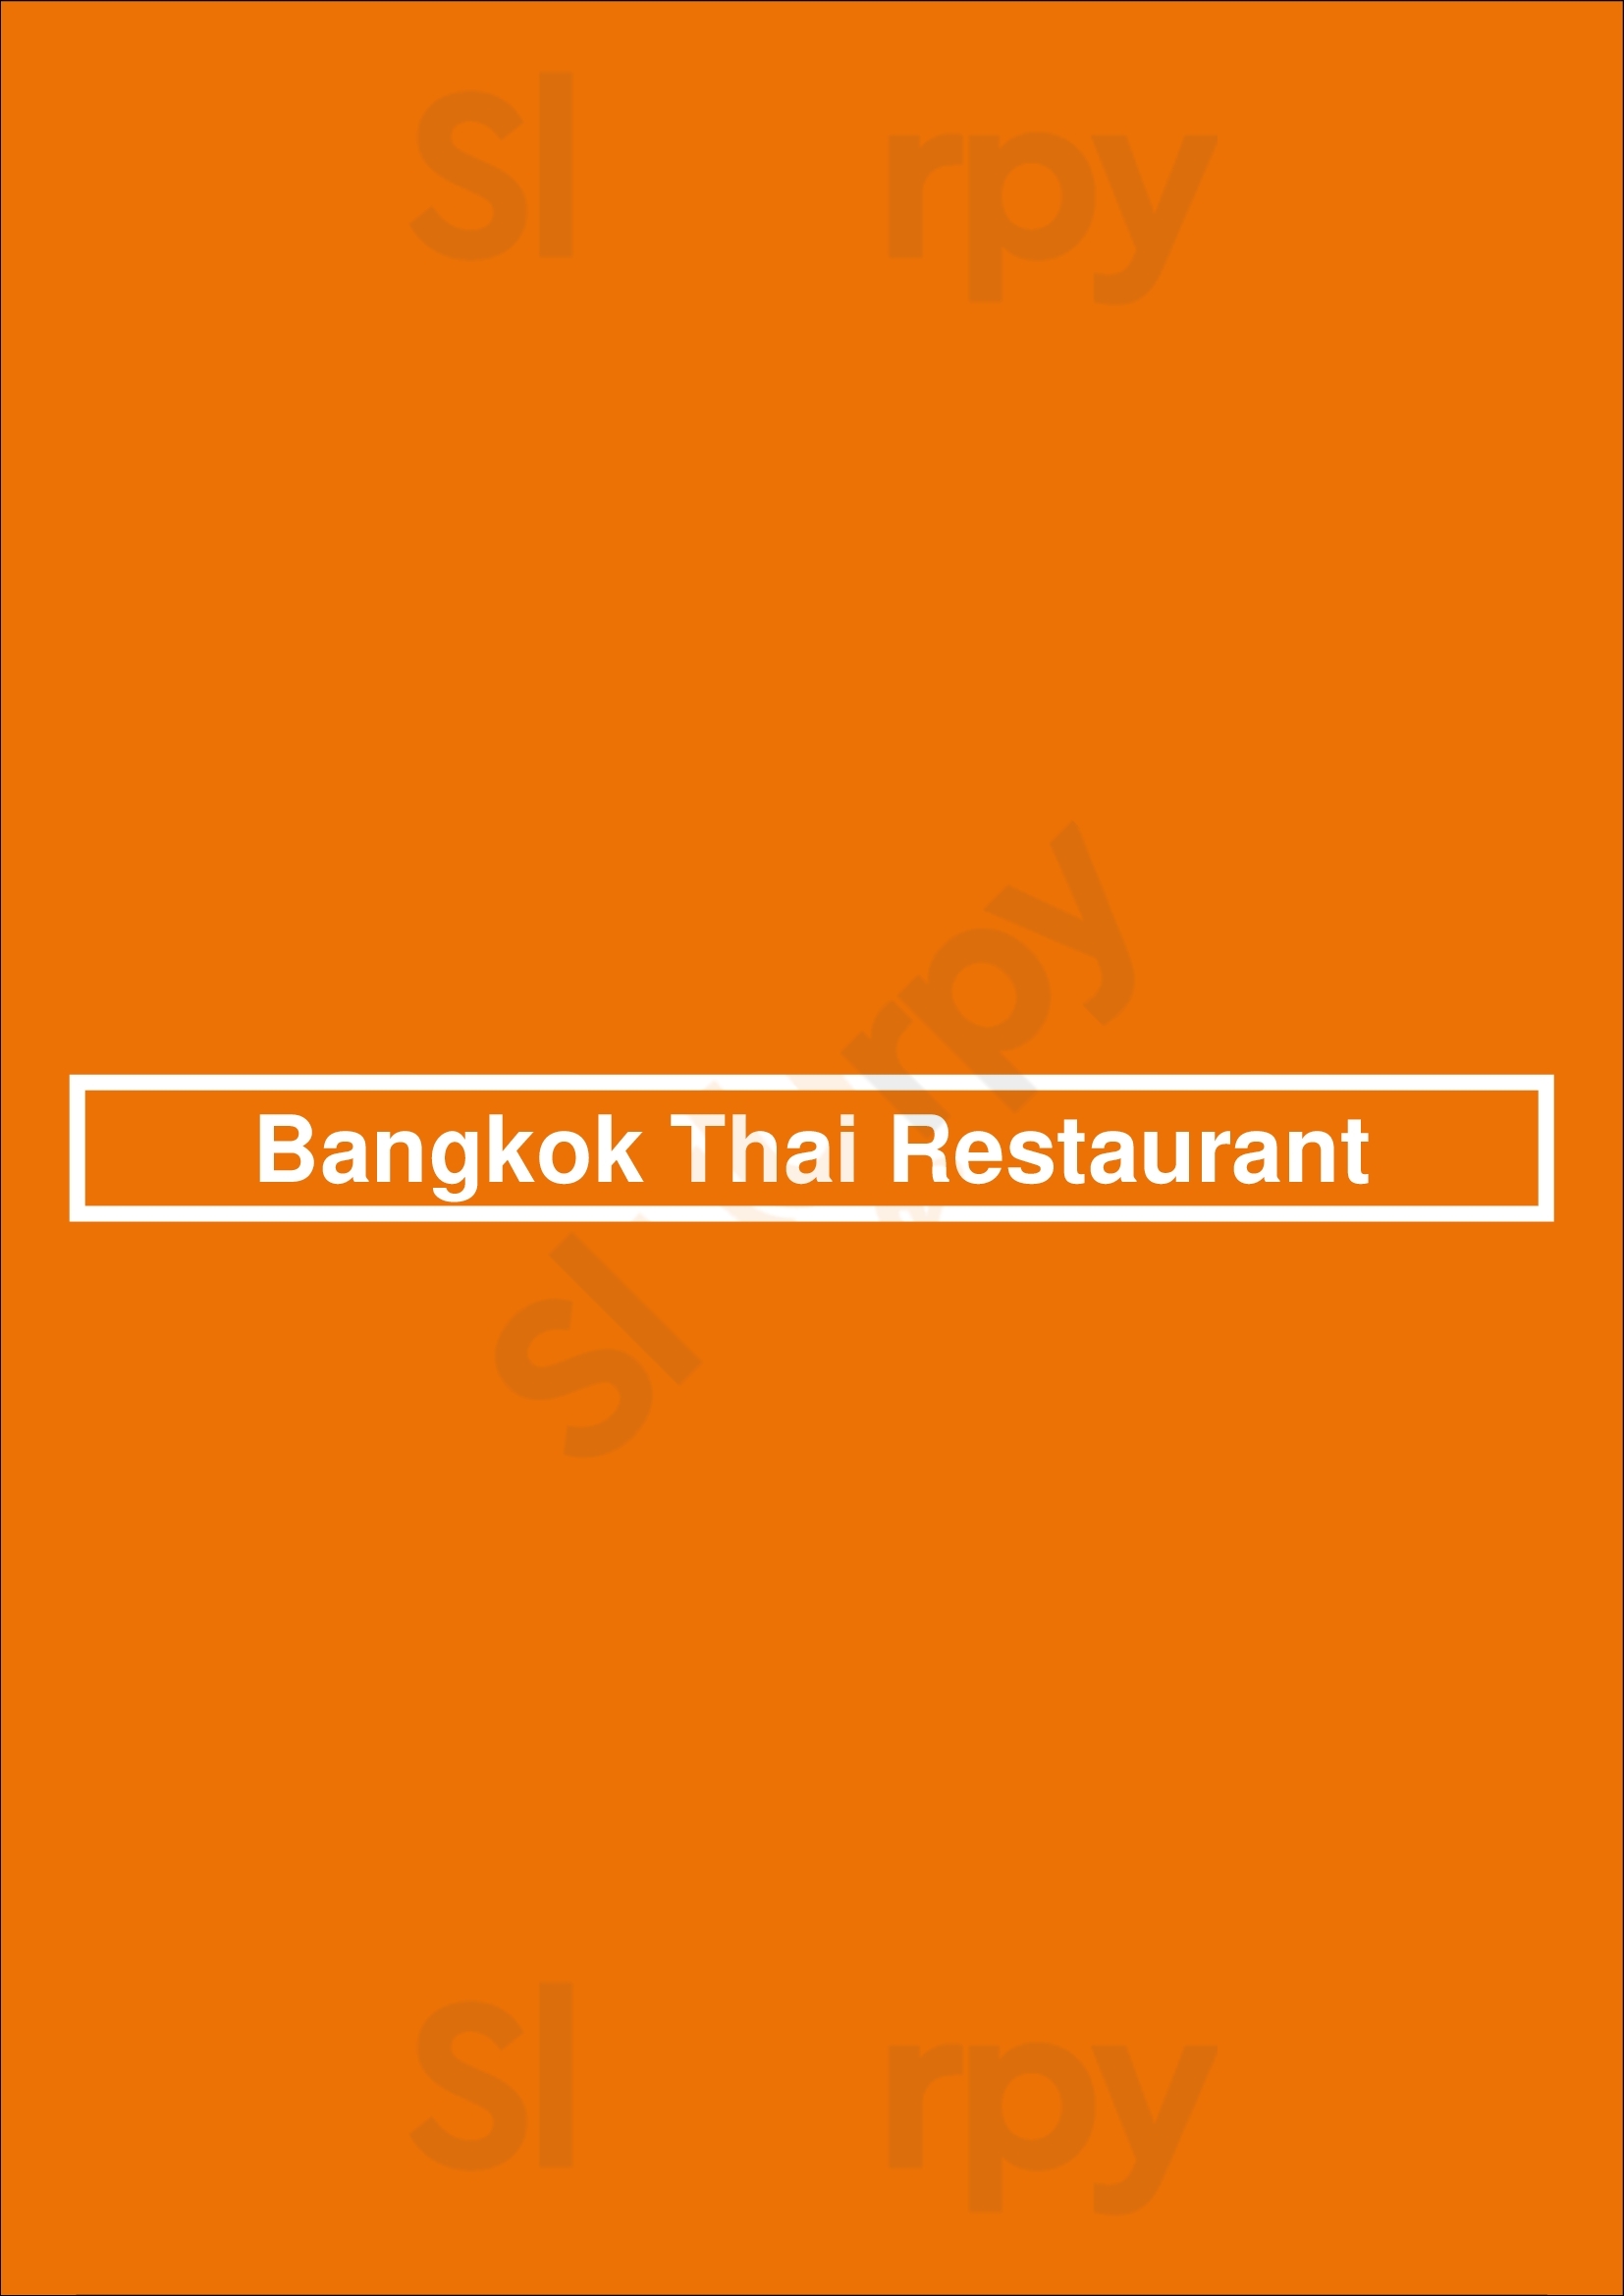 Bangkok Thai Restaurant Atlanta Menu - 1